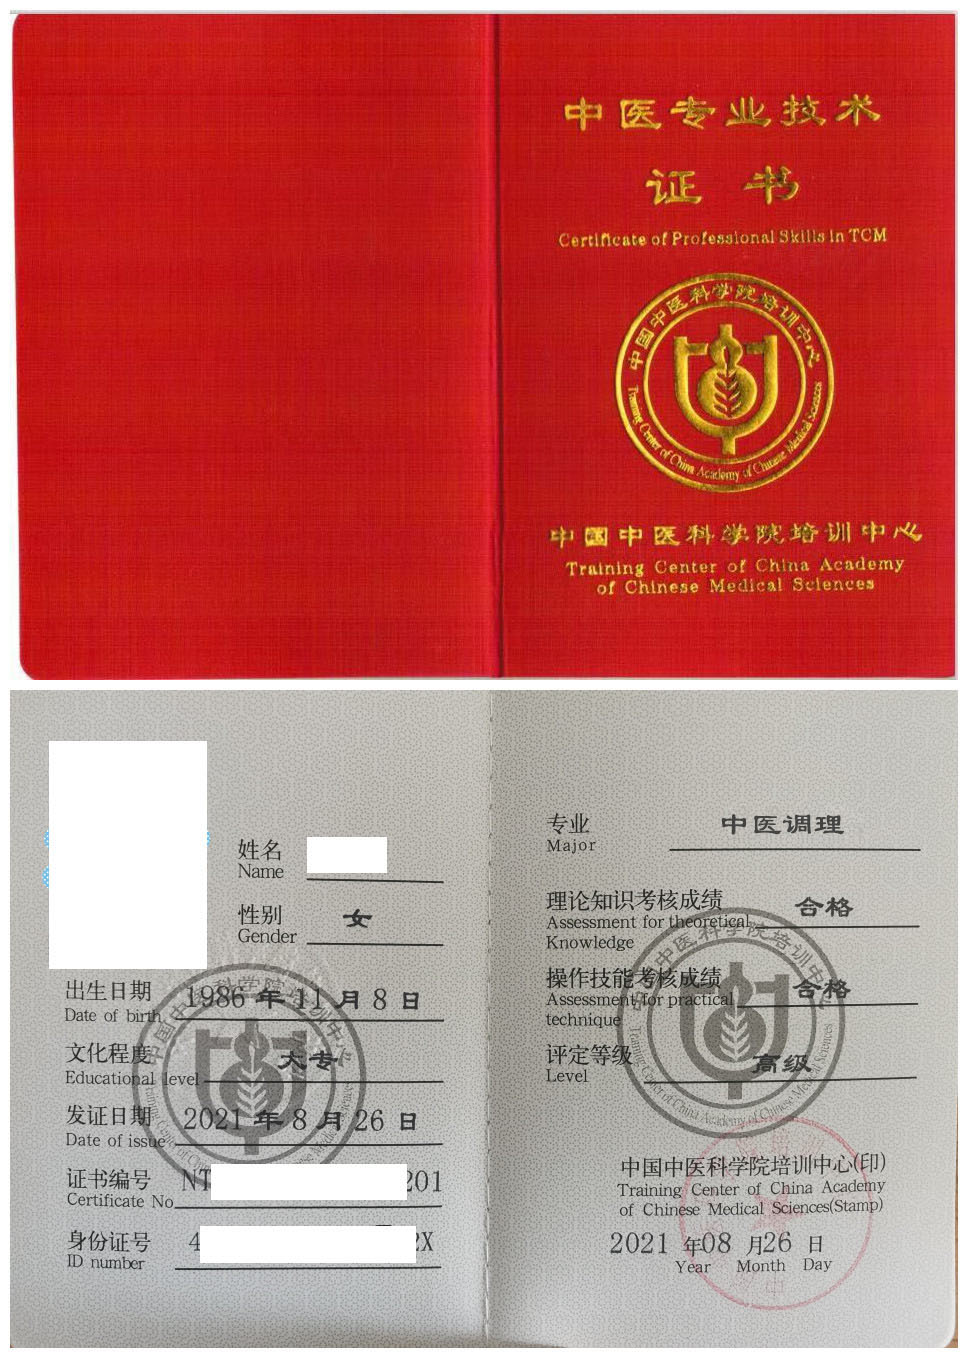 中国中医科学院培训中心 中医专业技术证书 中医调理证书样本